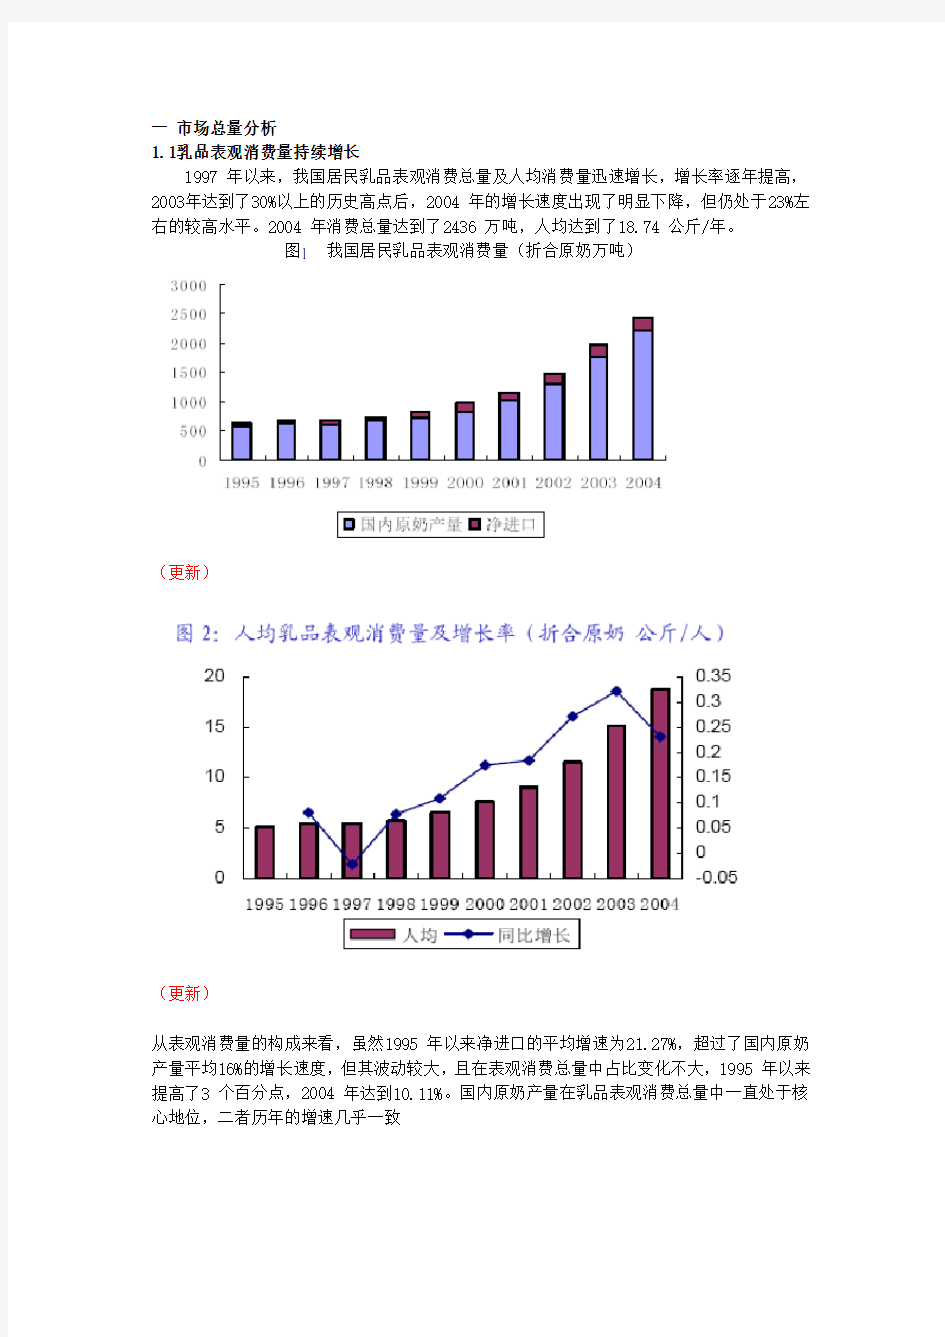 中国乳品行业分析和概述